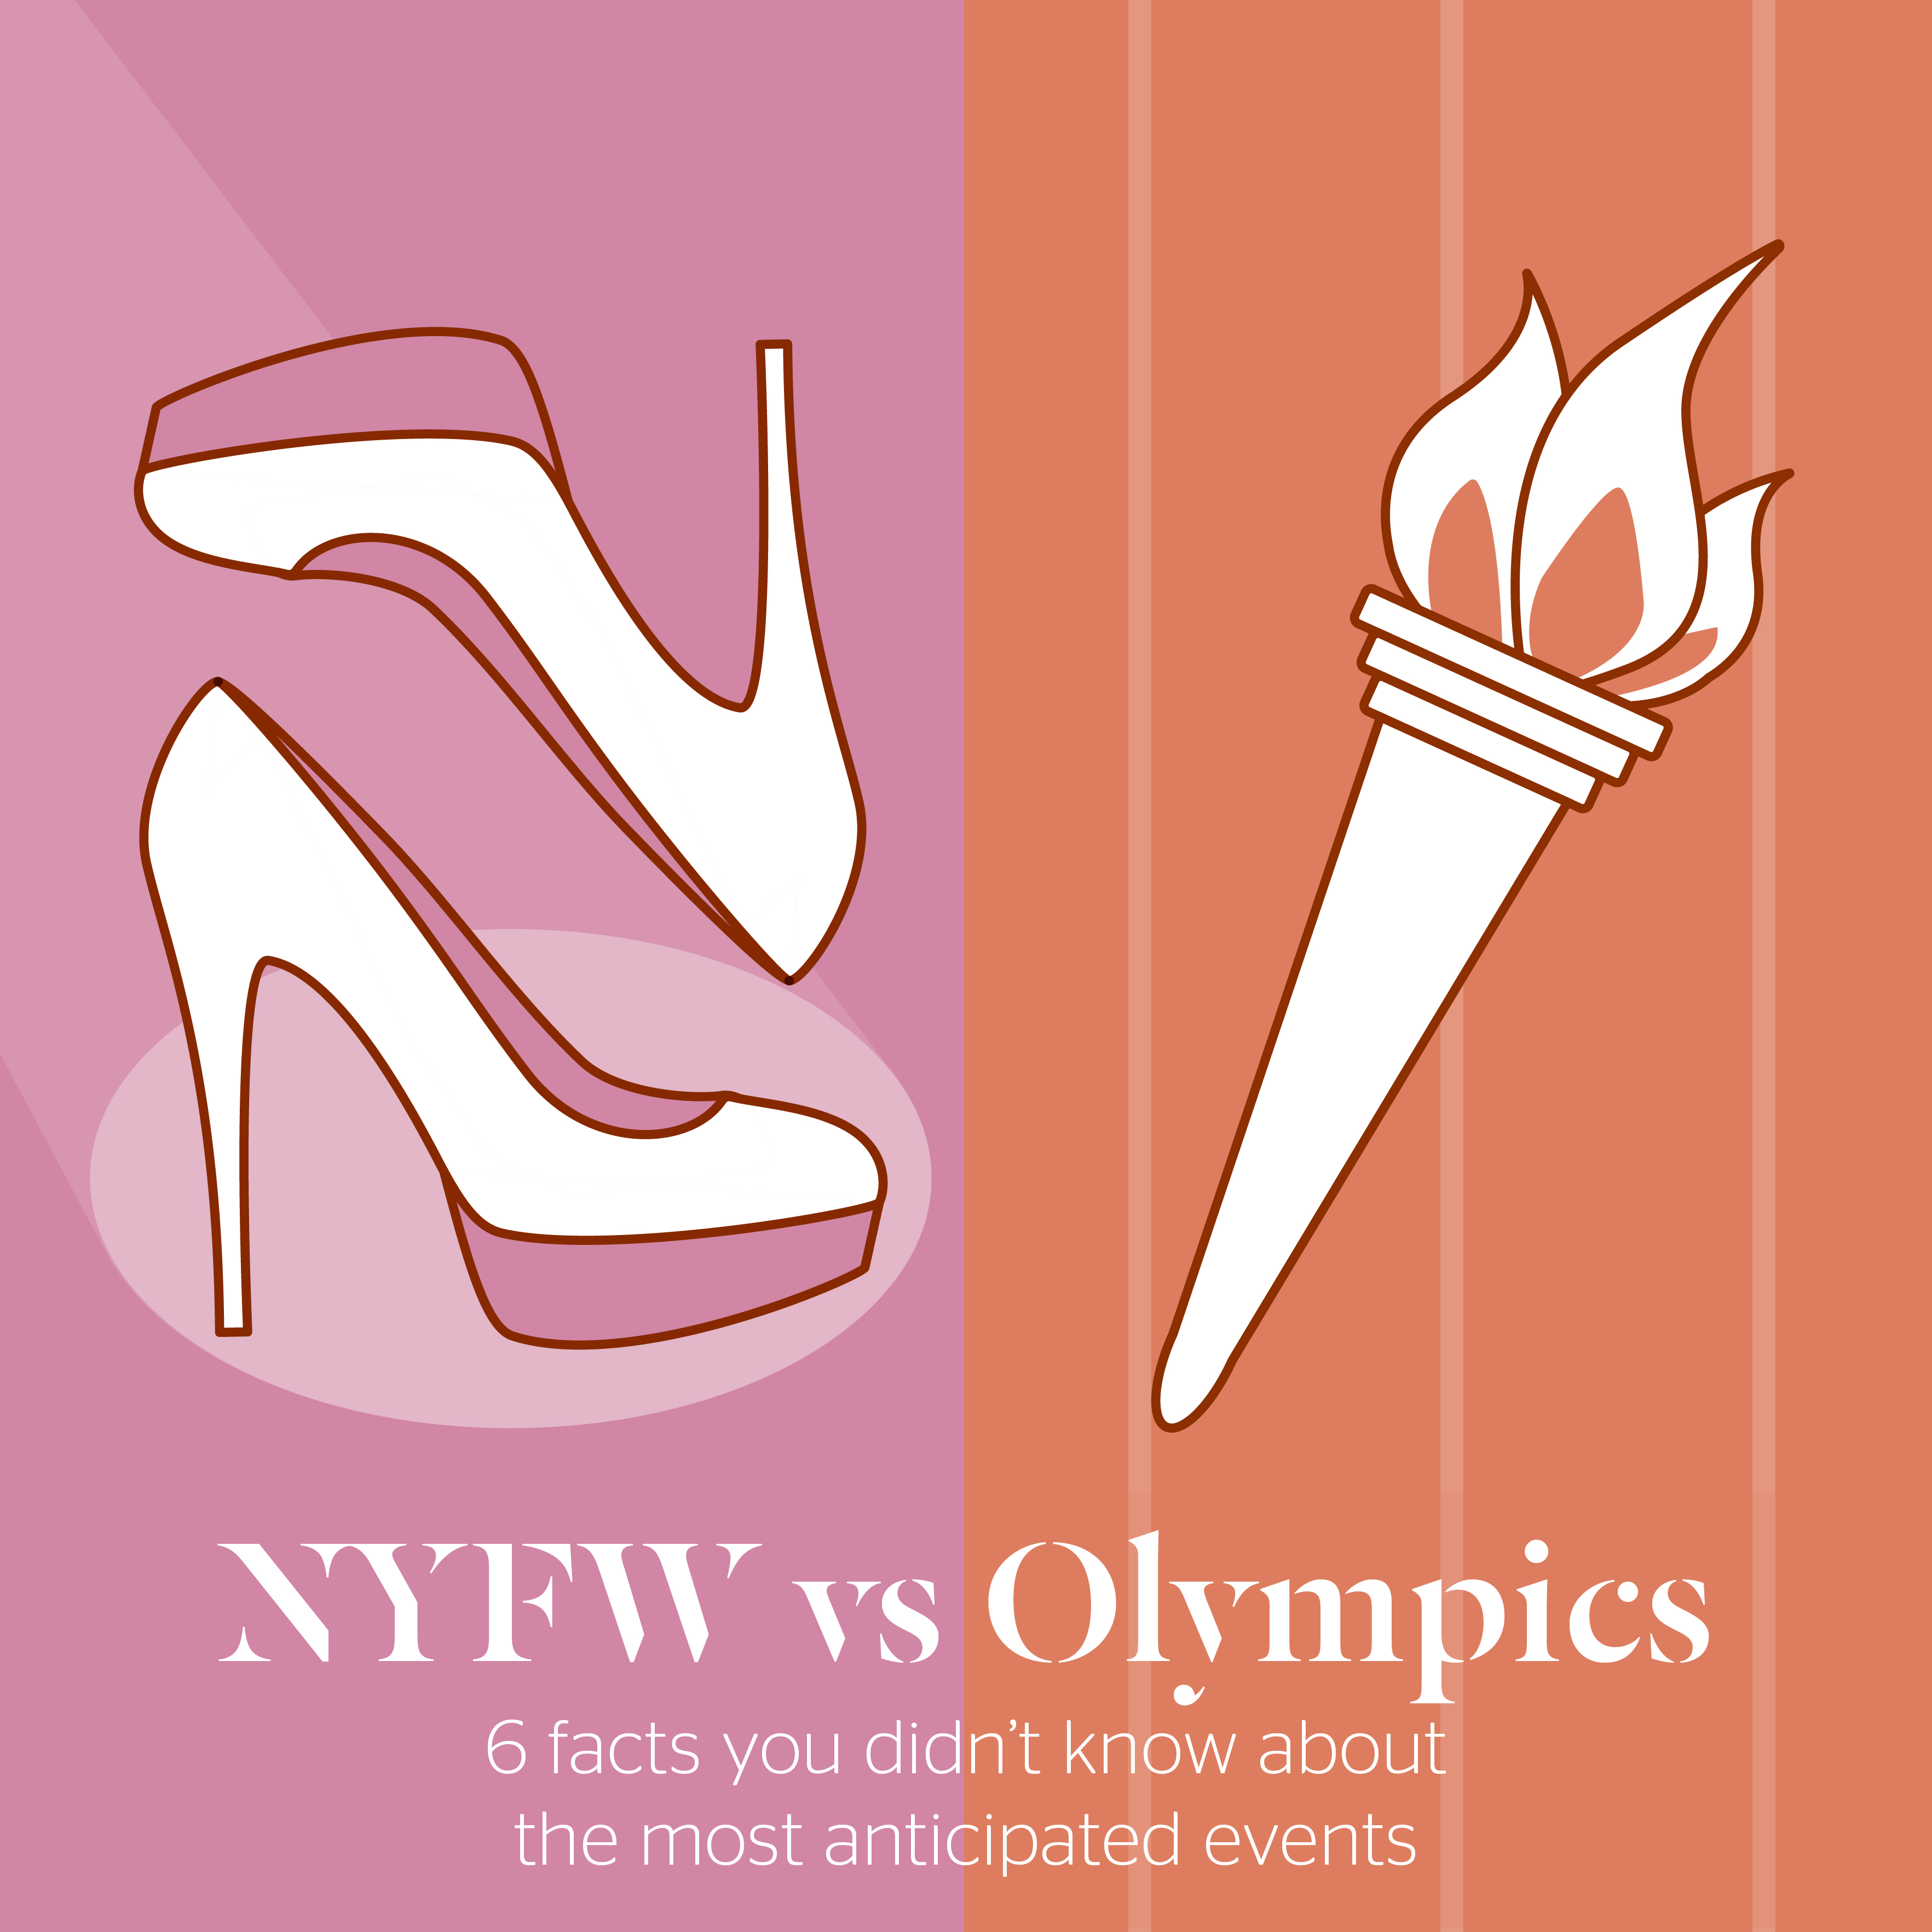 NYFW vs Olympics